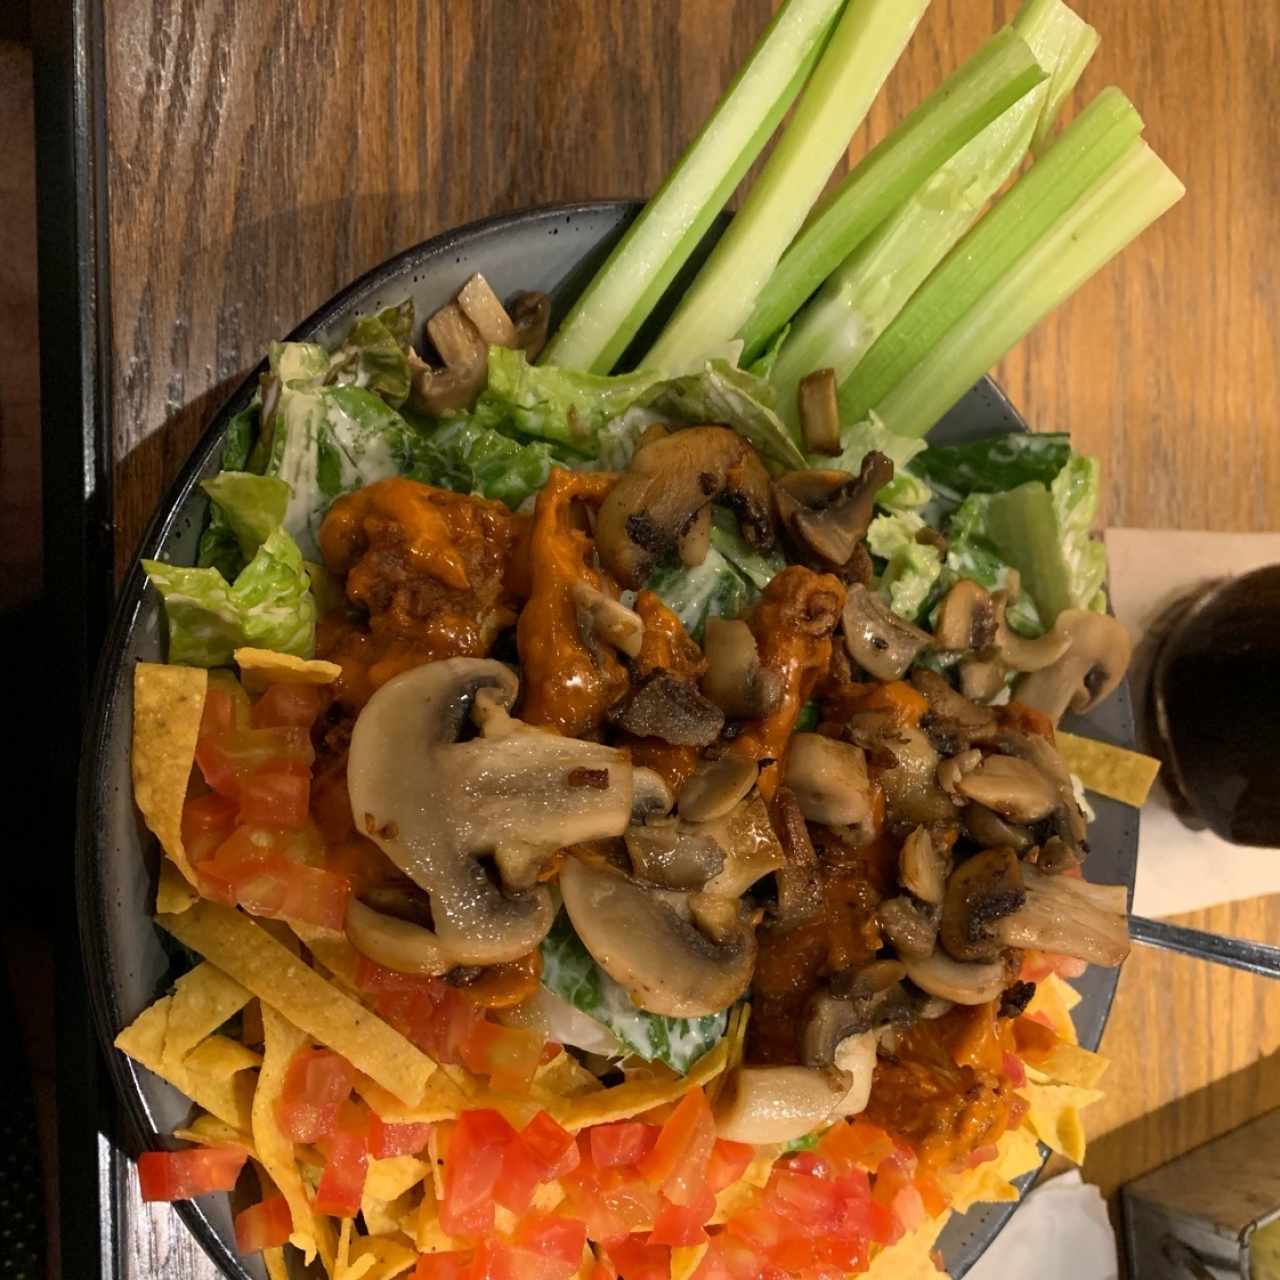 Buffalo salad